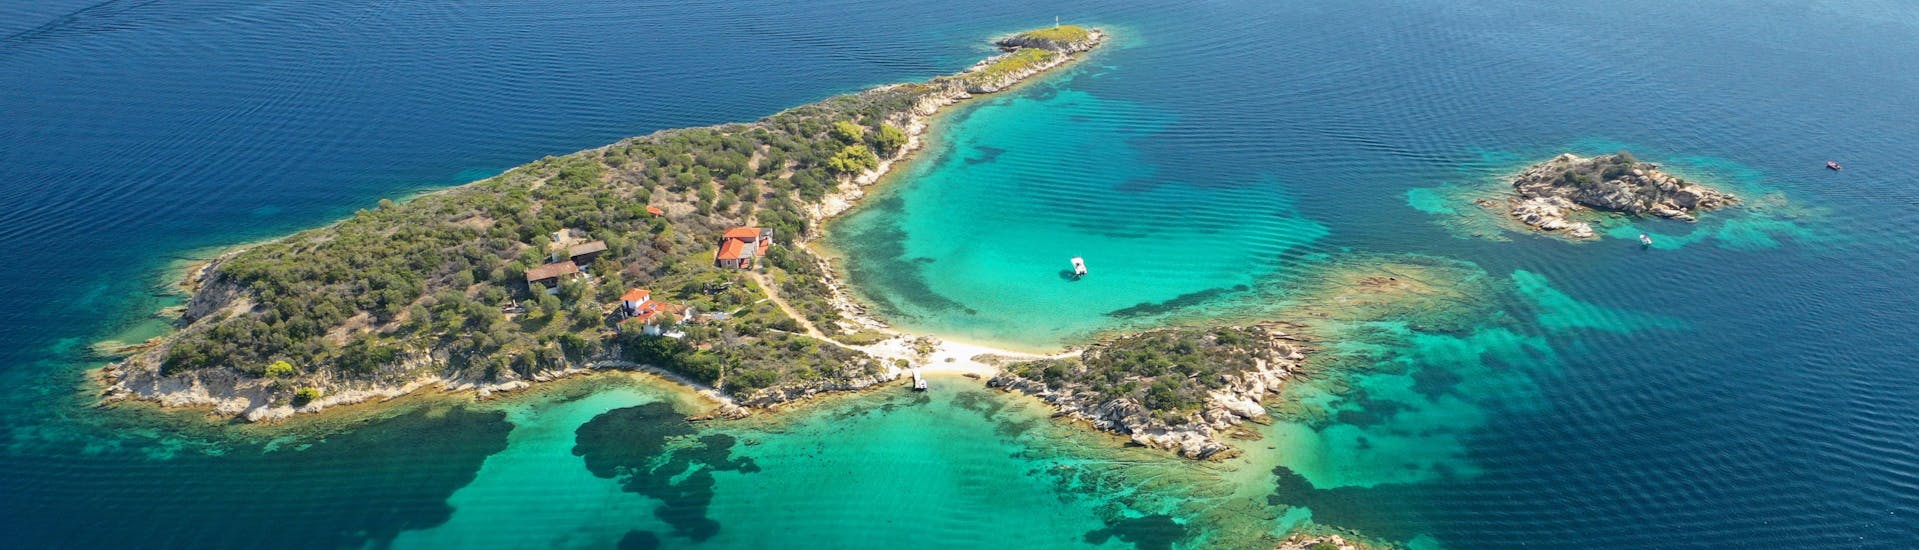 Foto panorámica aérea con dron del emblemático islote de Peristeri con un mar turquesa cristalino cerca de la isla de Diaporos.